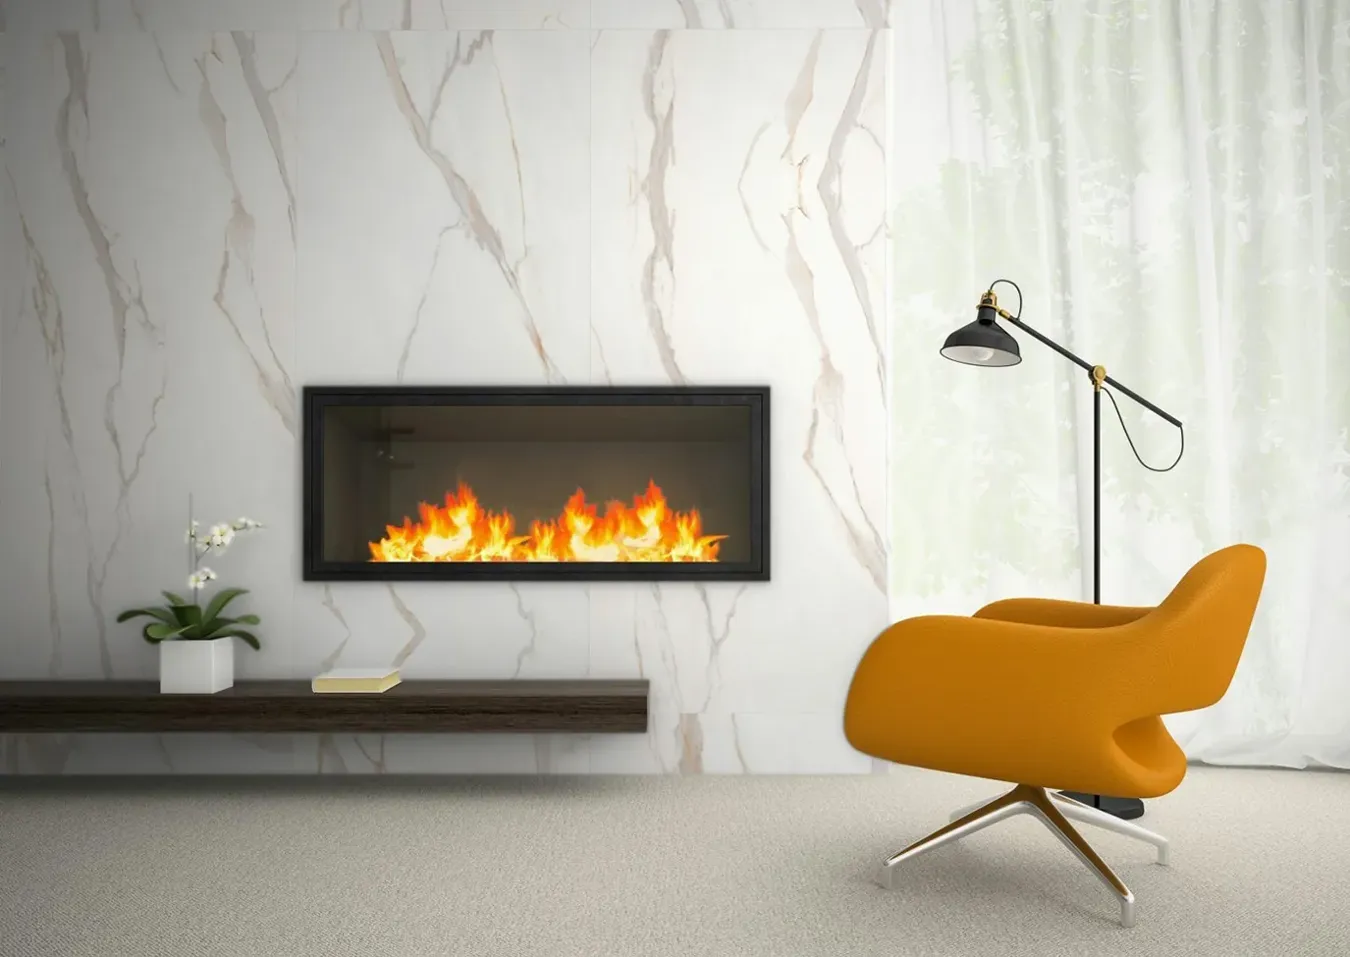 Salón sofisticado con chimenea de azulejos efecto mármol blanco, silla de diseño amarilla y lámpara de pie elegante